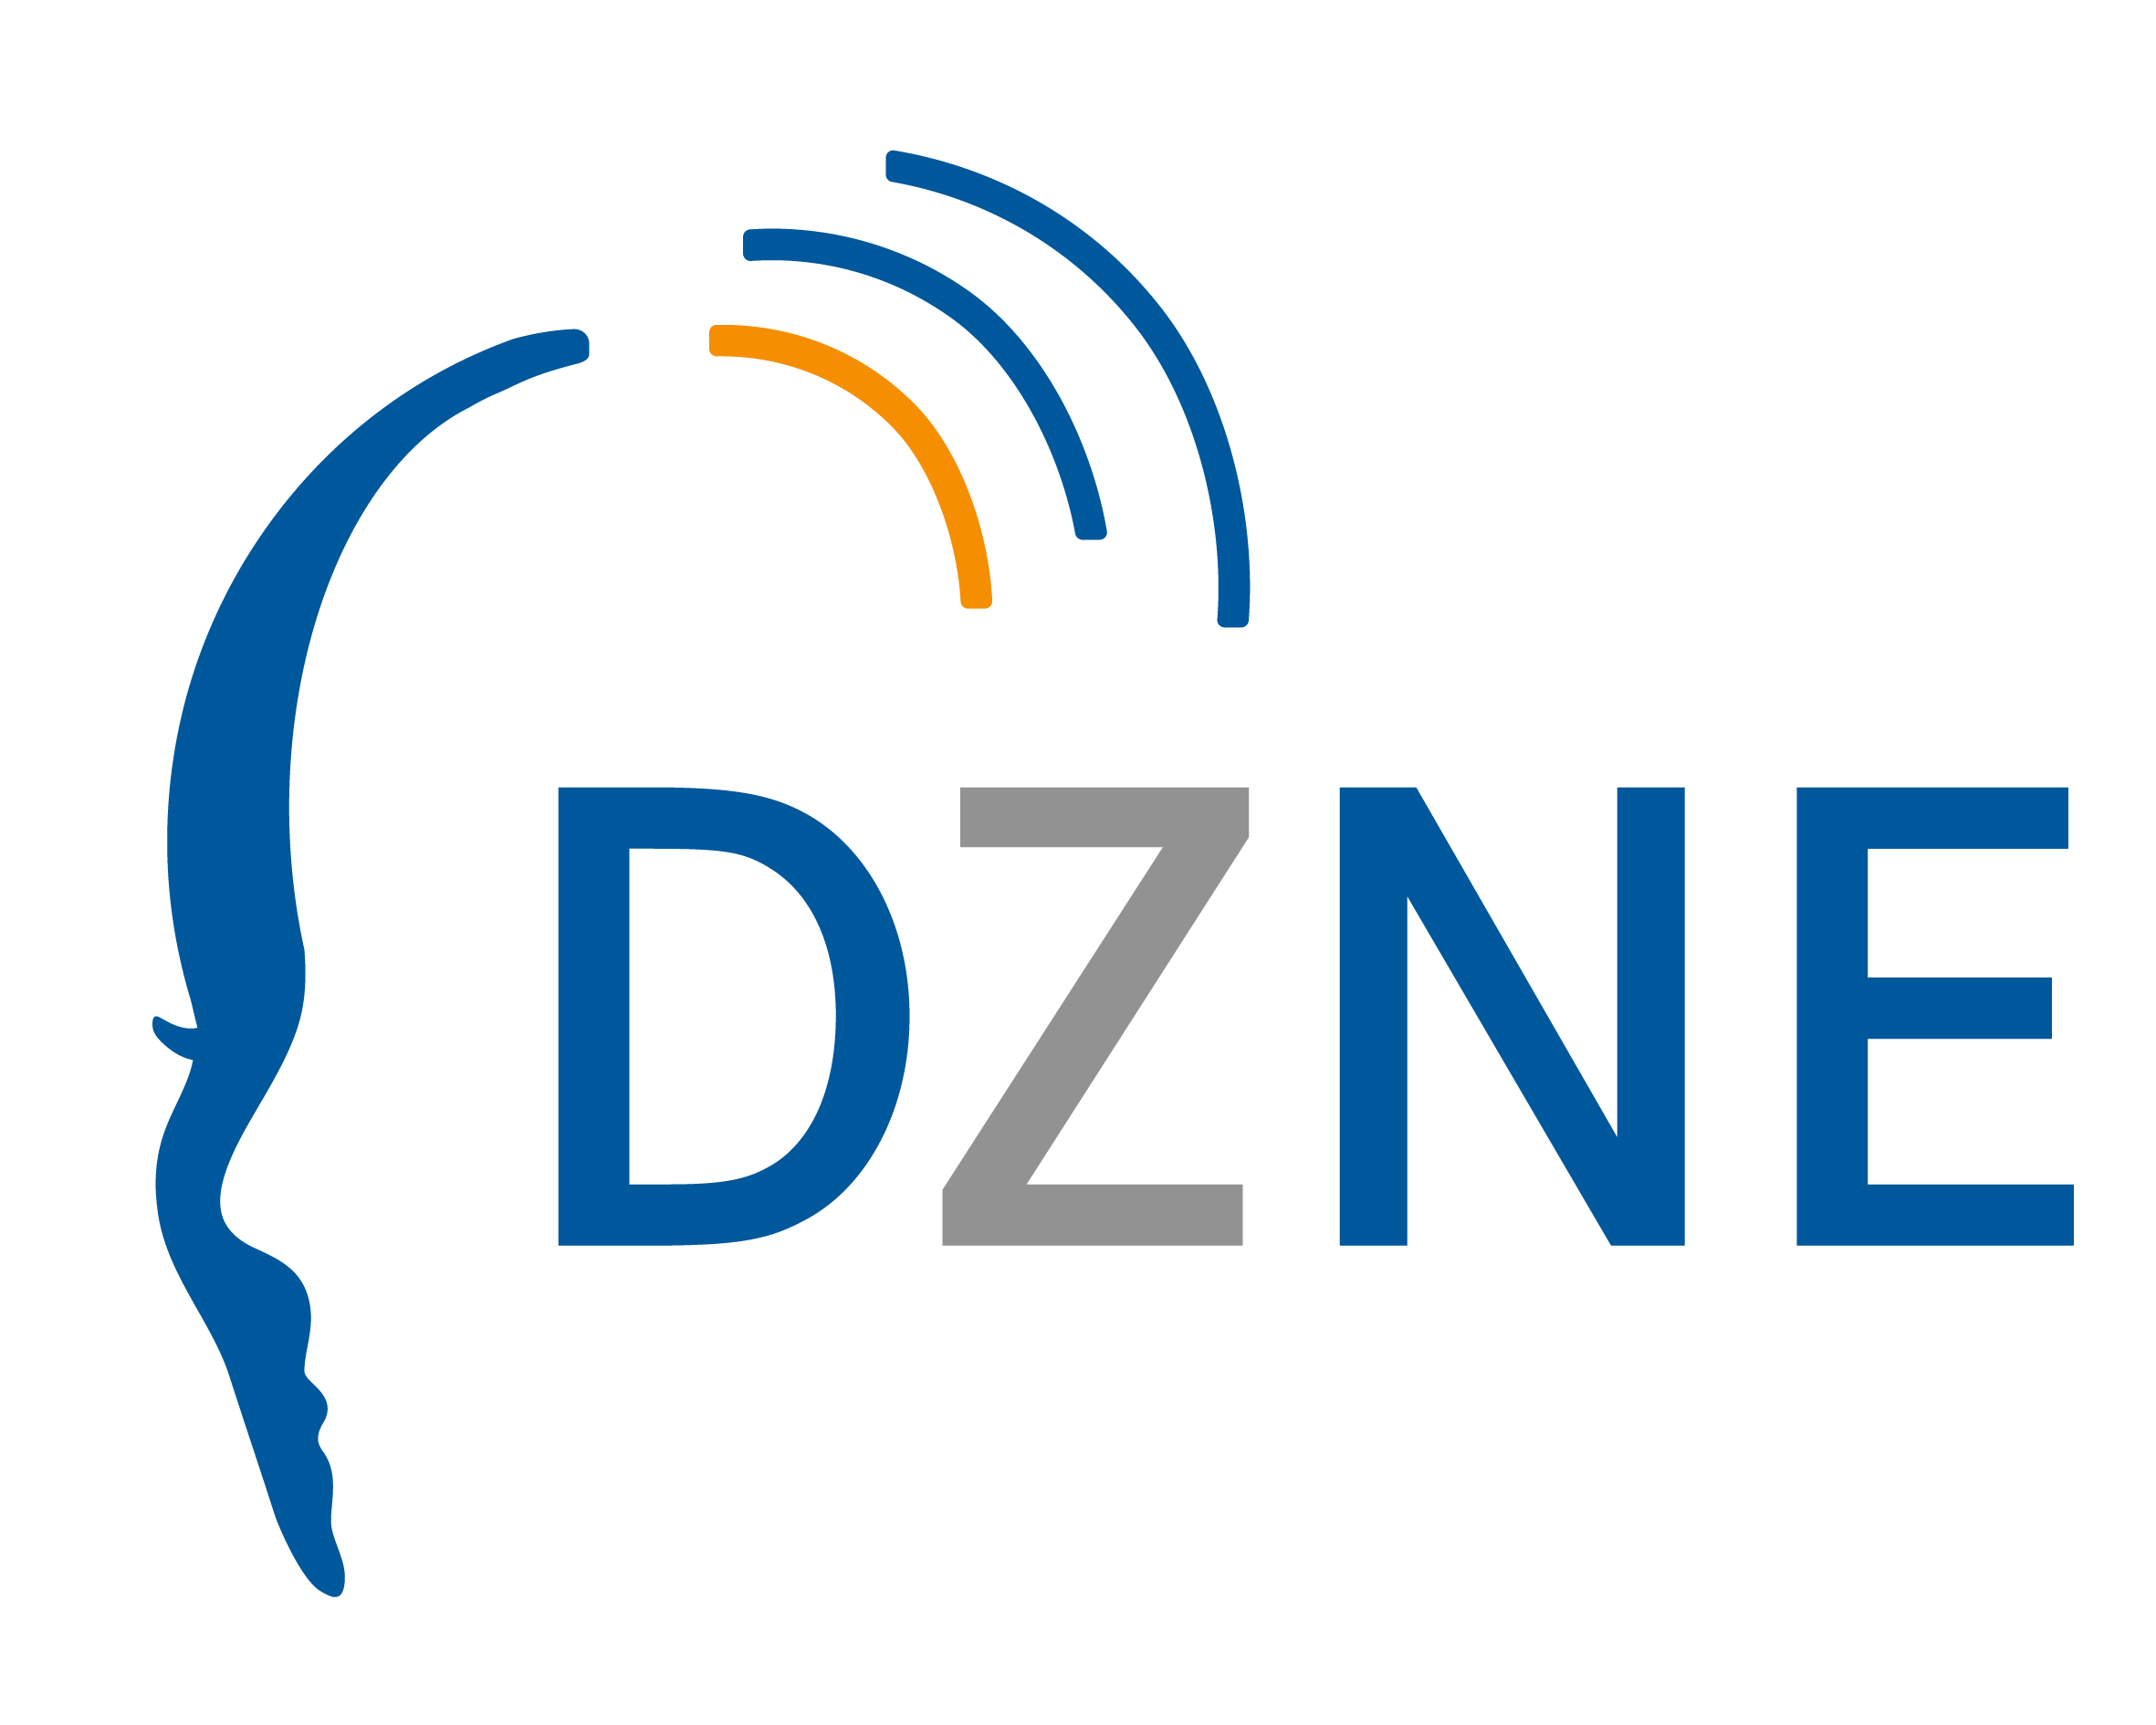 Logo DZNE